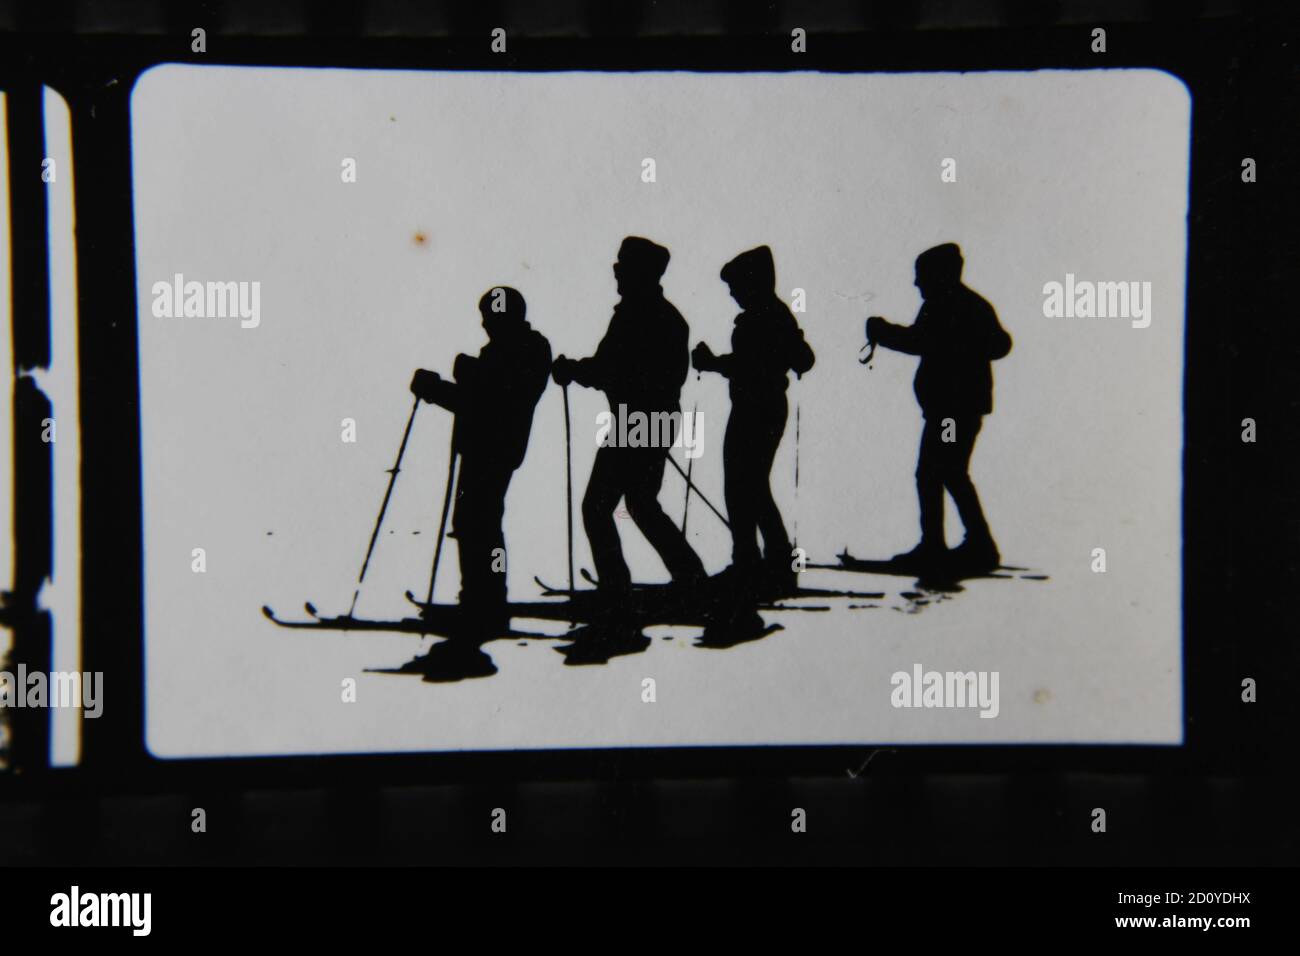 Feine Schwarz-Weiß-Profilfotografie der 70er Jahre von Skifahrern auf der Skipiste in ihren kompletten Ski-Outfits und Skiern, die den Hügel hinunter fahren. Stockfoto